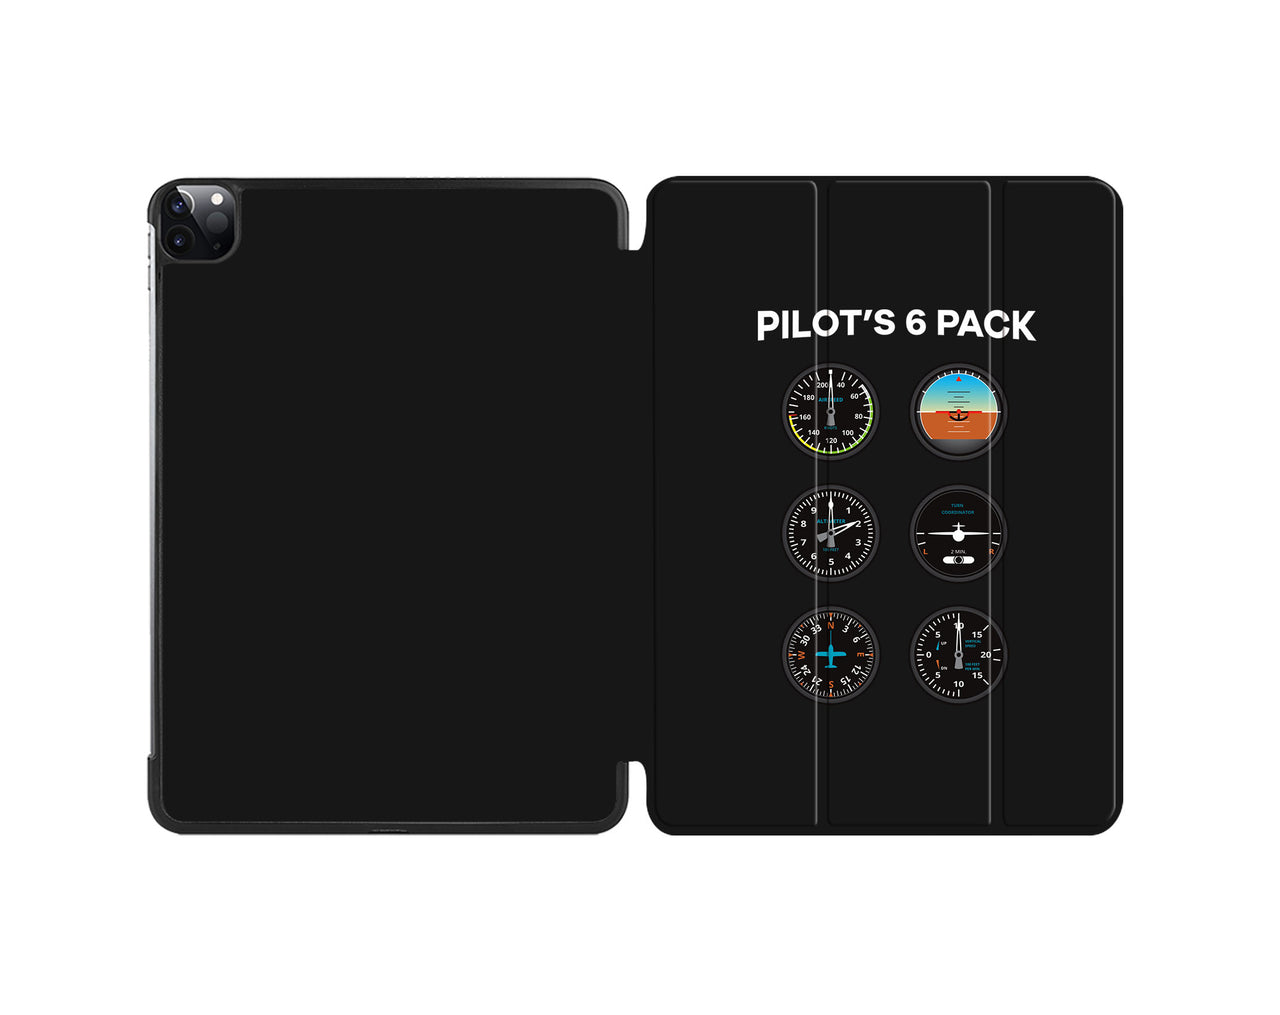 Pilot's 6 Pack Designed iPad Cases